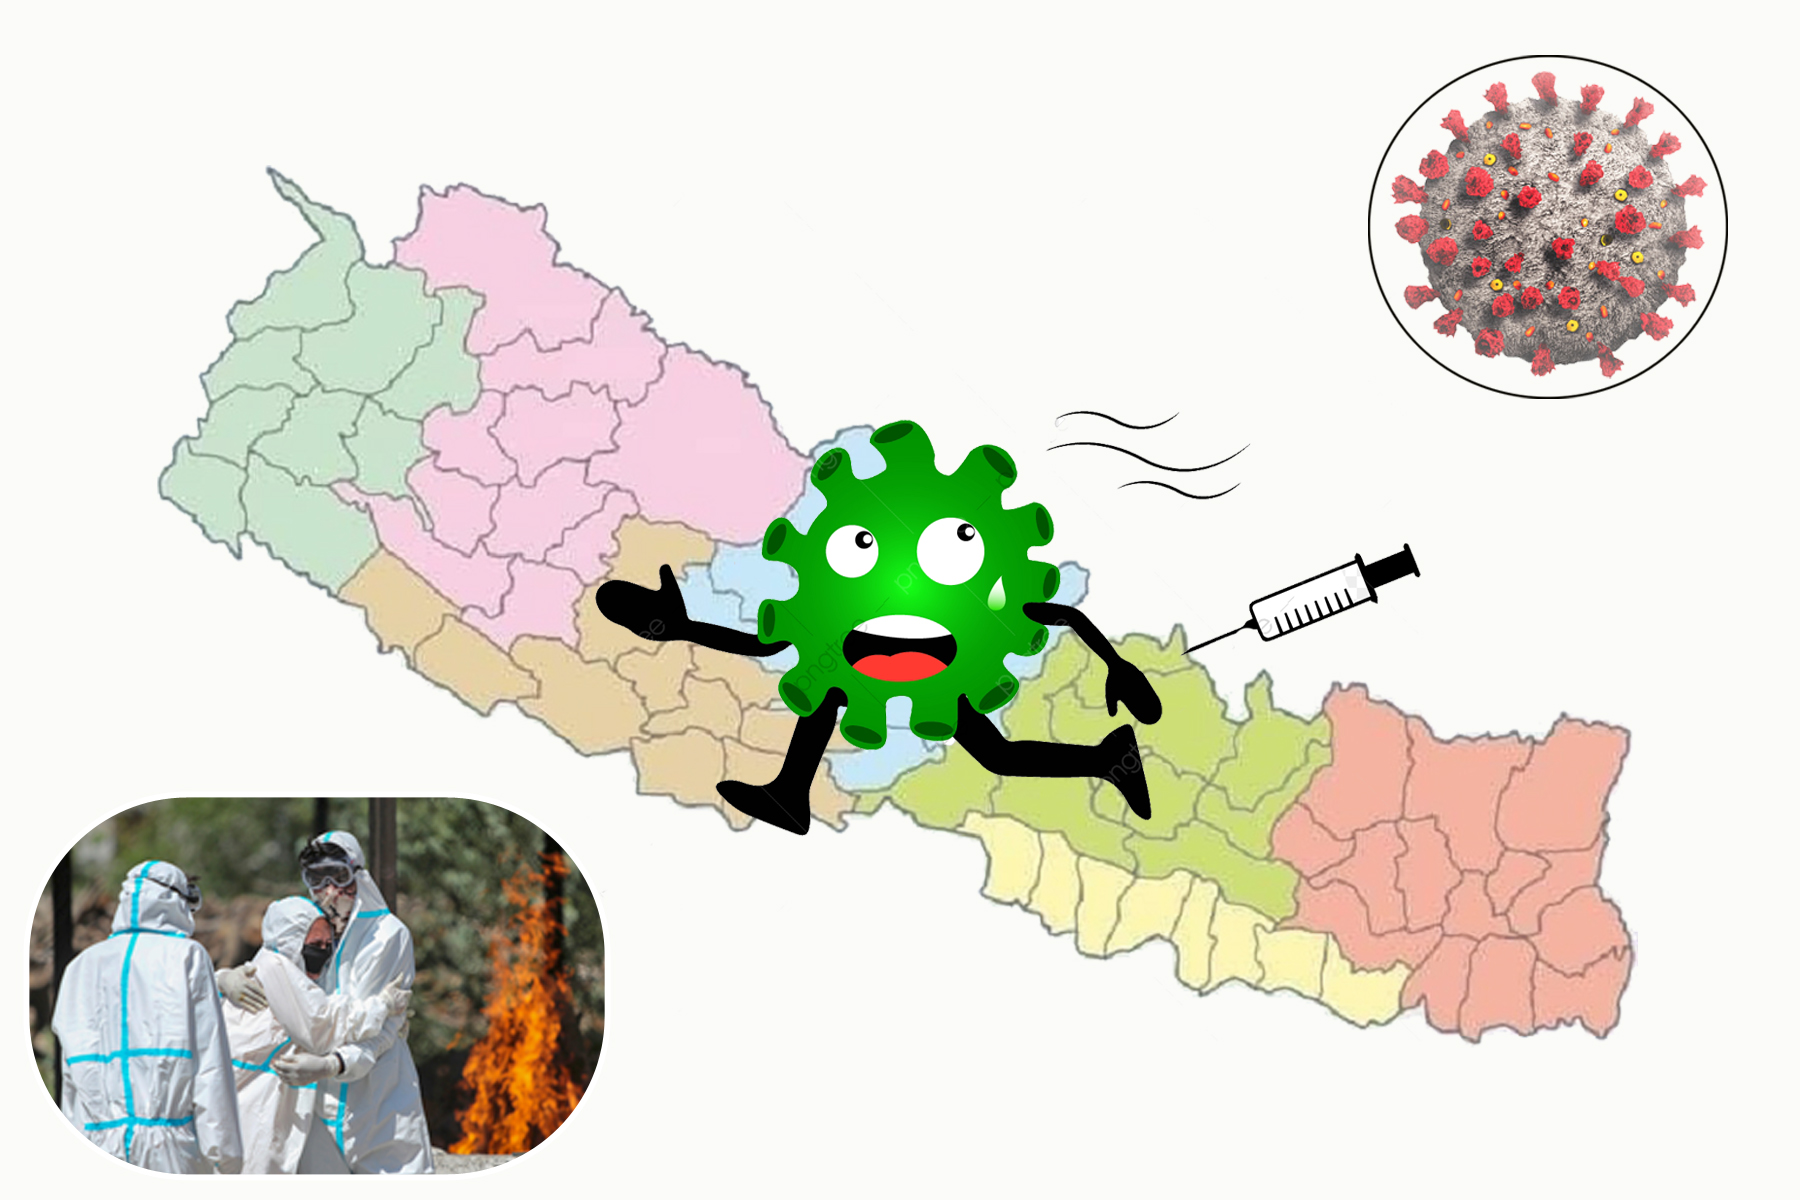 भुगोलपार्क अभिमत सर्वेक्षण:कोरोना महामारीकोे दोस्रो लहर बाट नेपाल पनि नराम्रोसँग प्रभावित बारे जनताको अभिमत निम्न अनुसार देखिन्छ